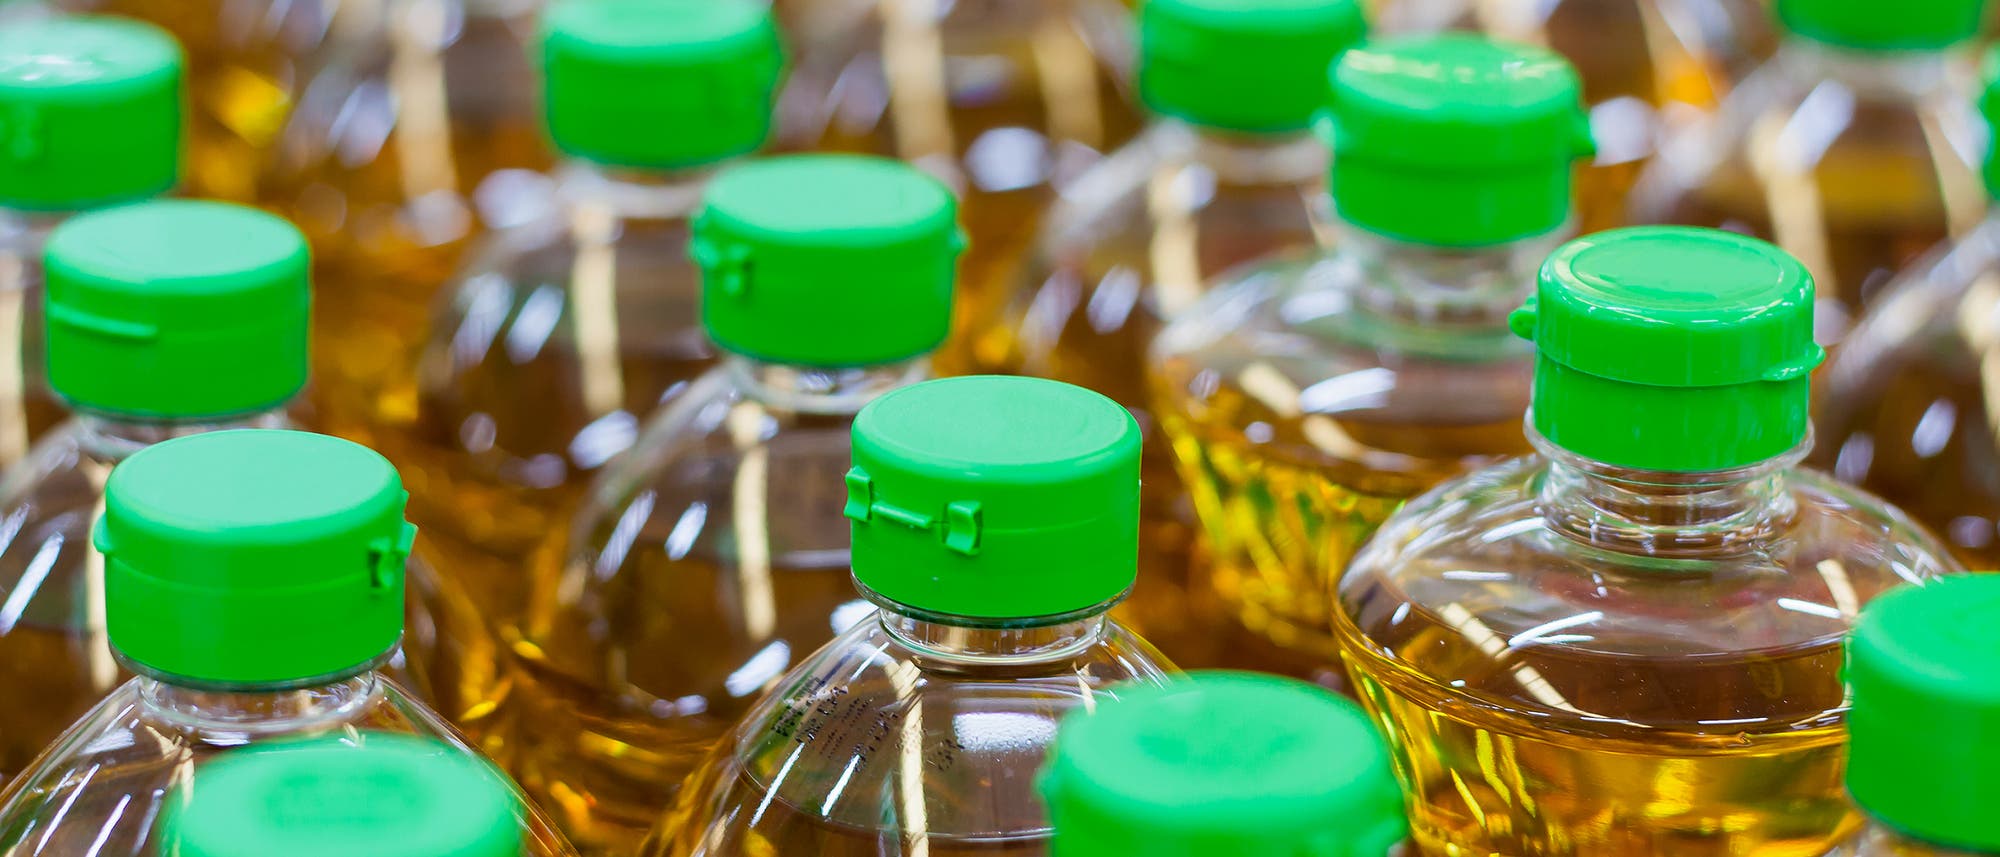 Das Öl aus Rapspflanzen schmeckt leicht nussig und gilt als »Öl der Wahl«, wie es die Fachleute der Deutschen Gesellschaft für Ernährung formulieren.